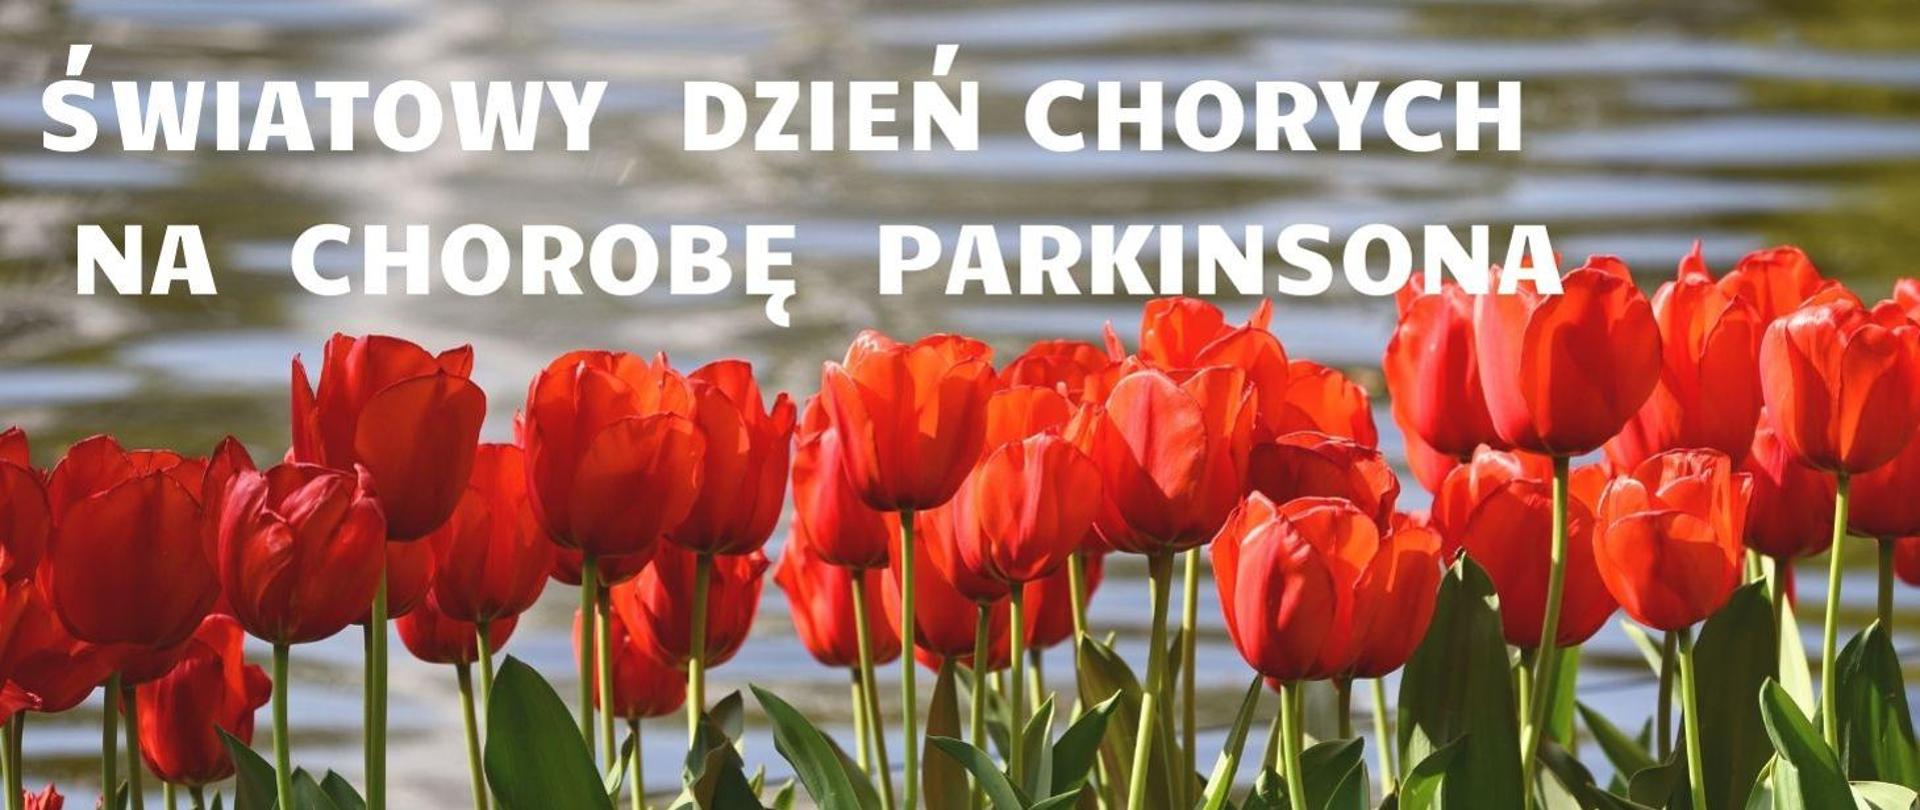 U góry napis: Światowy Dzień Chorych na Chorobę Parkinsona. Na dole: czerwone tulipany